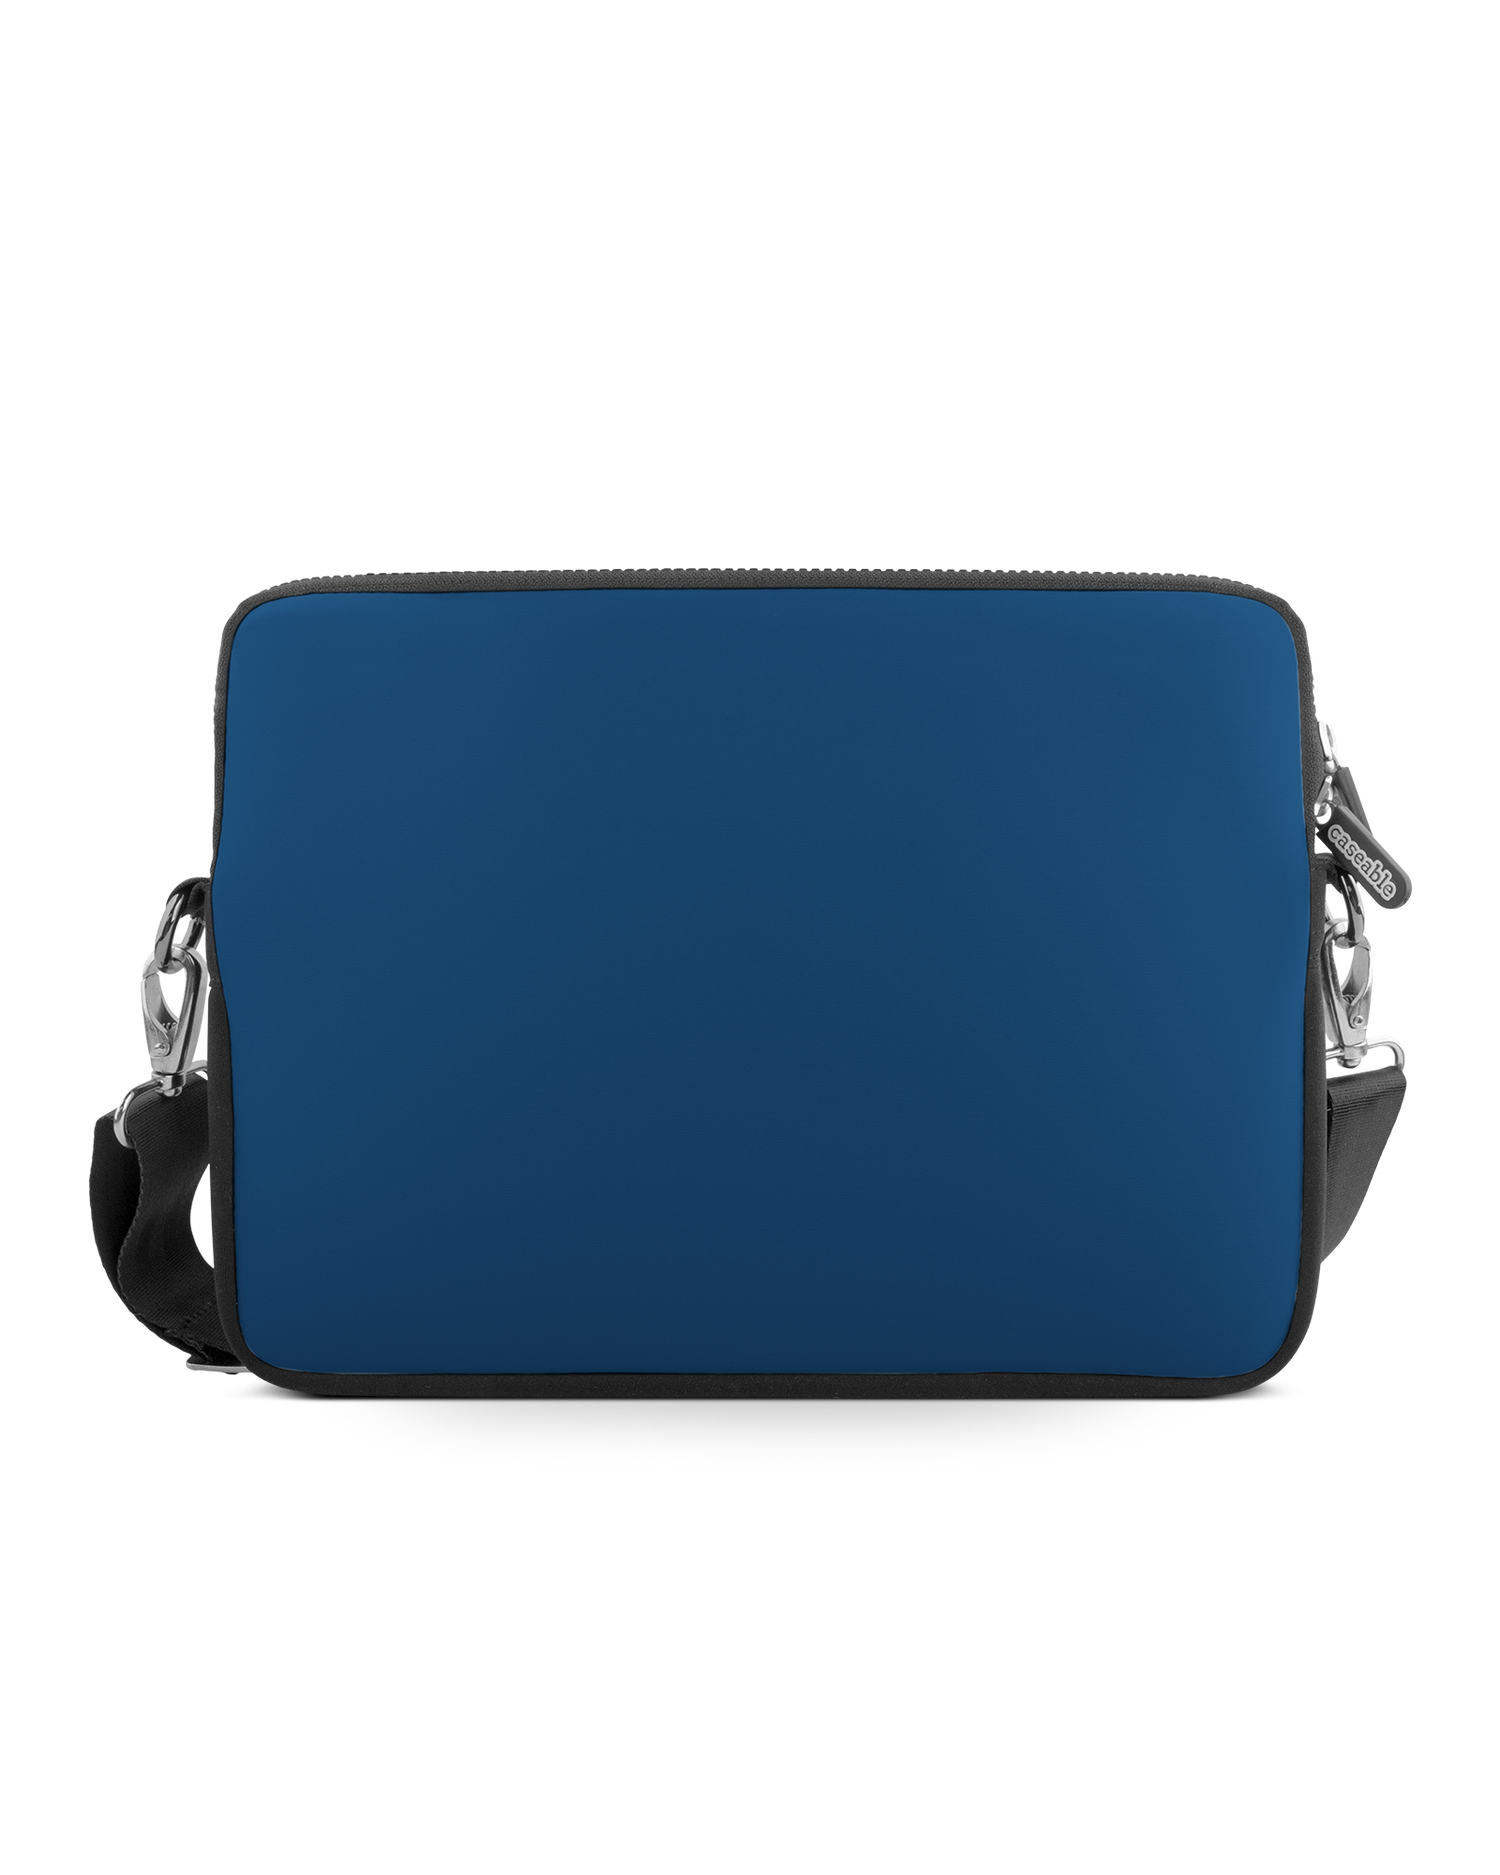 CLASSIC BLUE Premium Laptop Bag 17 inch: Front View